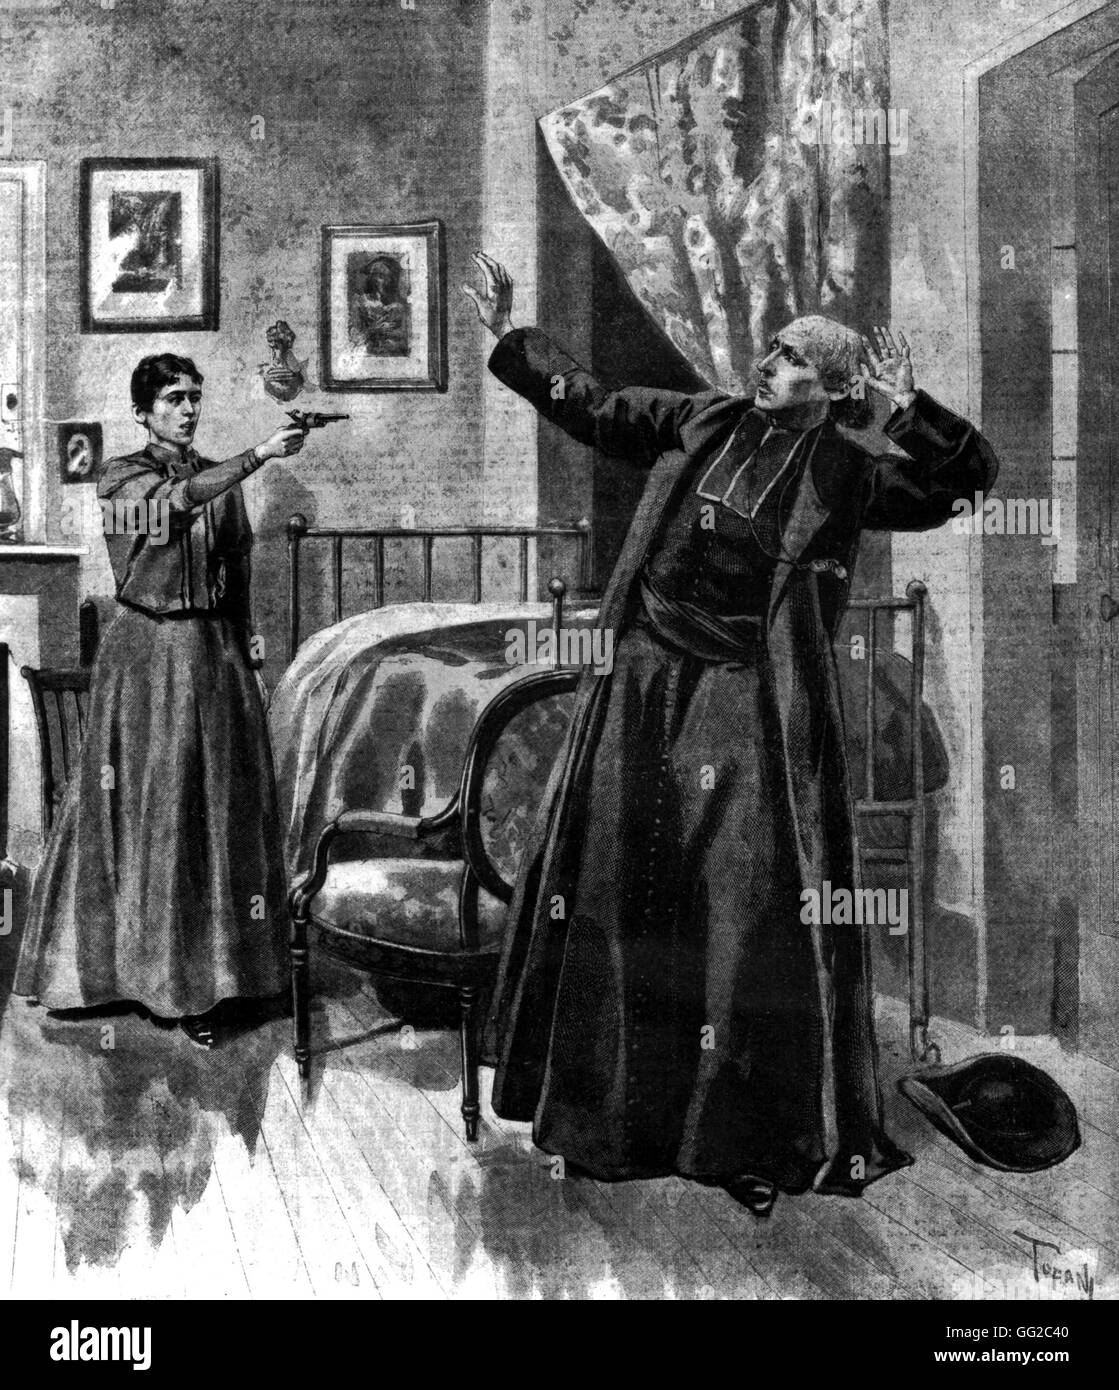 Atentado anarquista. Asesinato del abad de Broglie de mayo de 1895 Francia Foto de stock